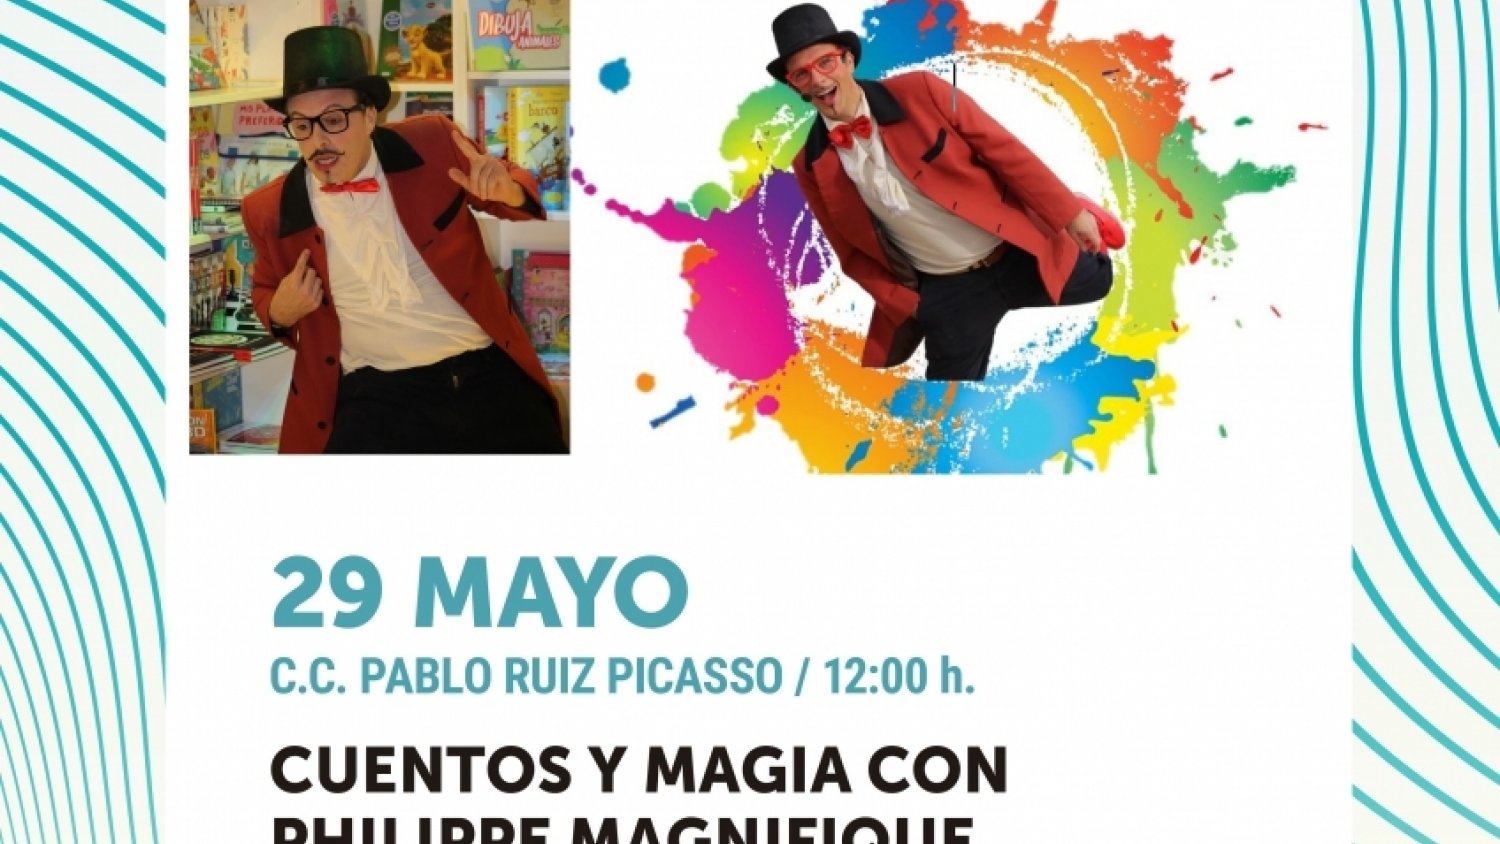 El Centro Cultural Pablo Ruiz Picasso acoge el espectáculo del artista Jesús Tiracuentos